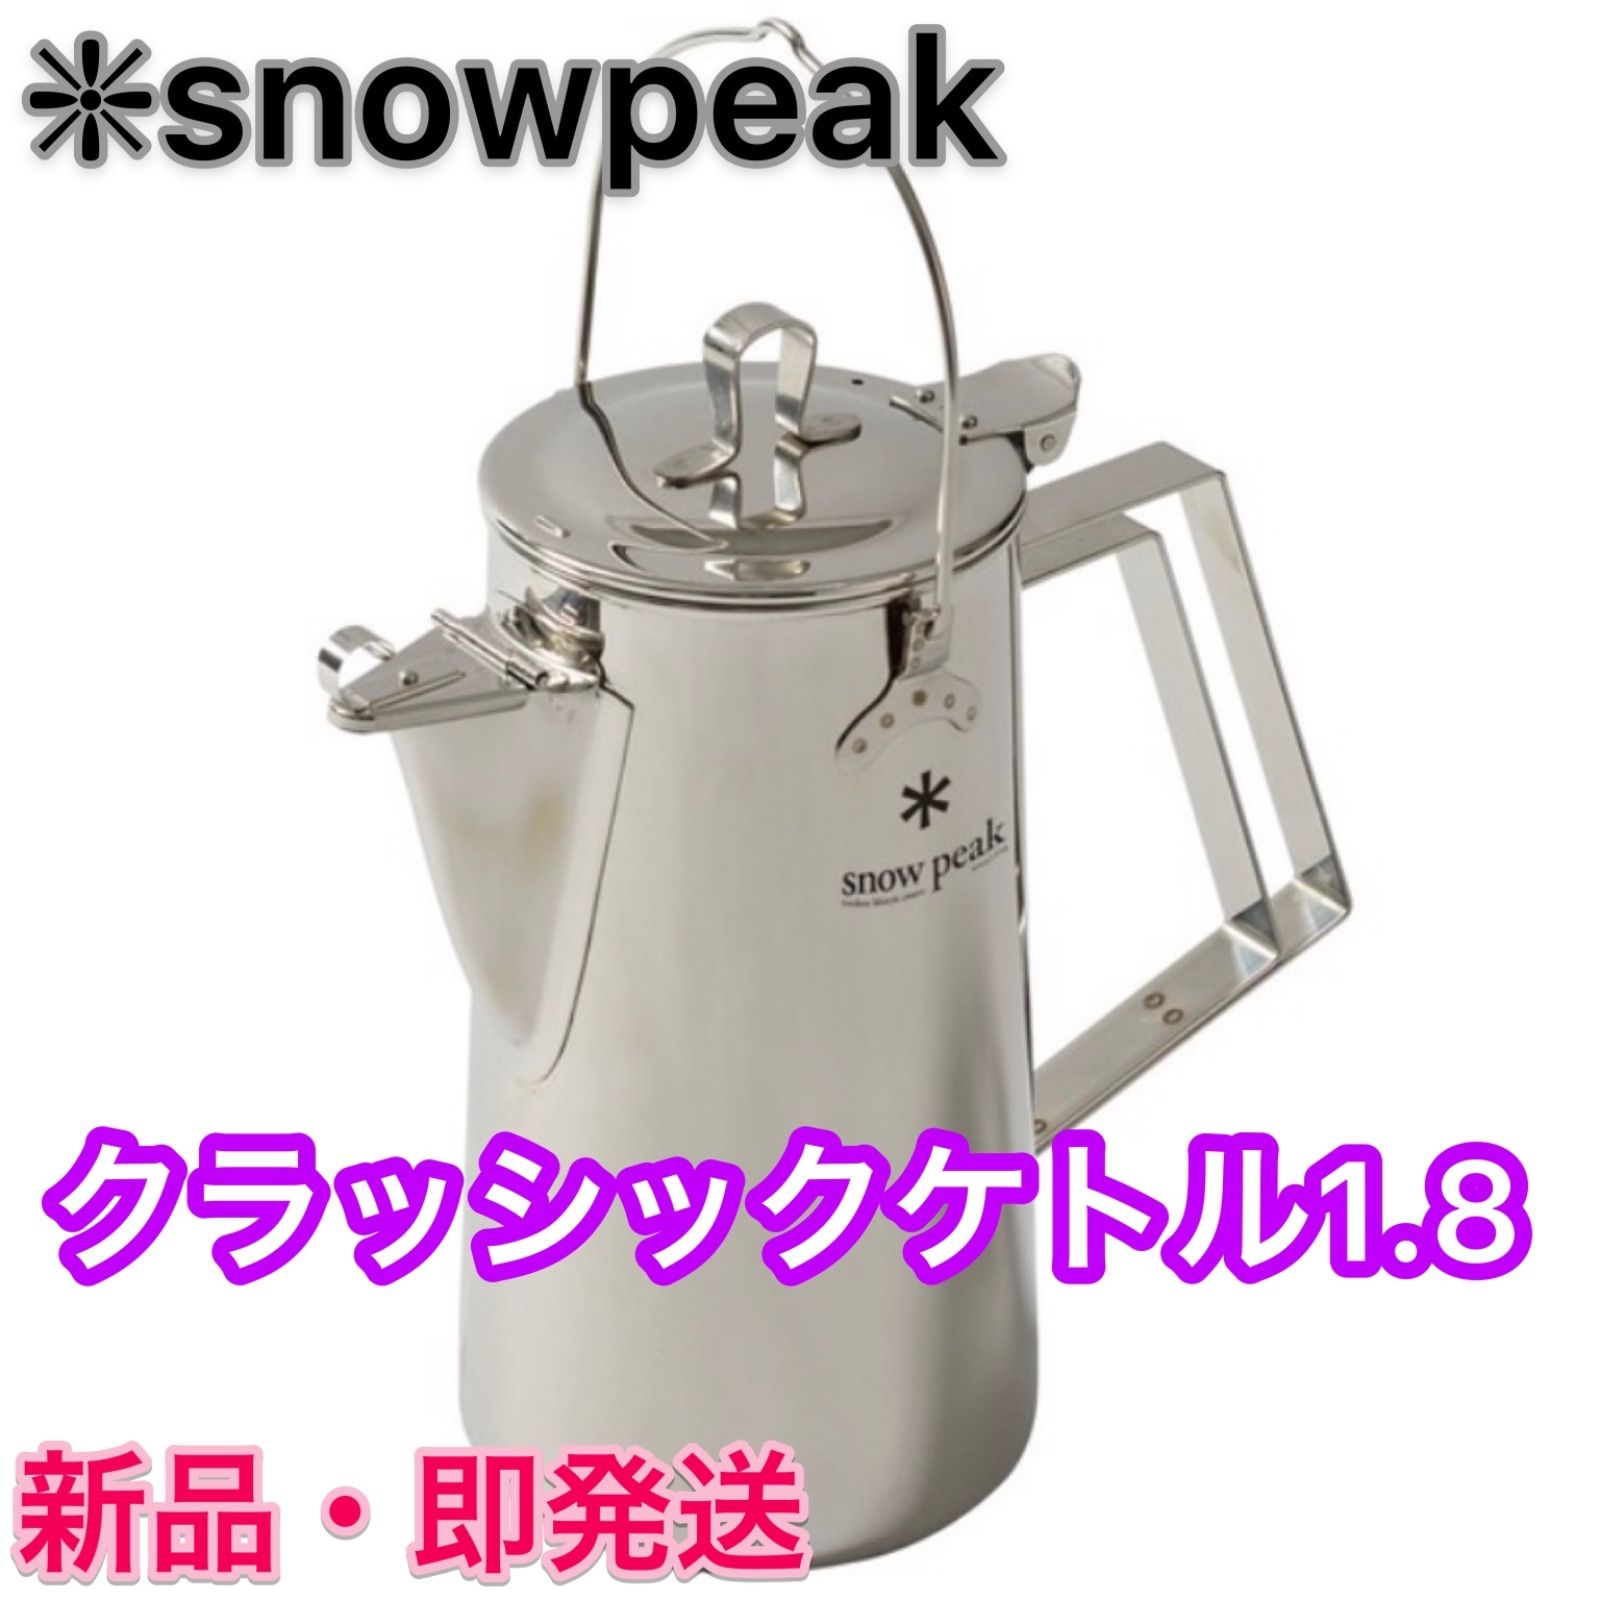 スノーピーク クラッシックケトル1.8 ⭐️ snow peak【新品未開封 ...